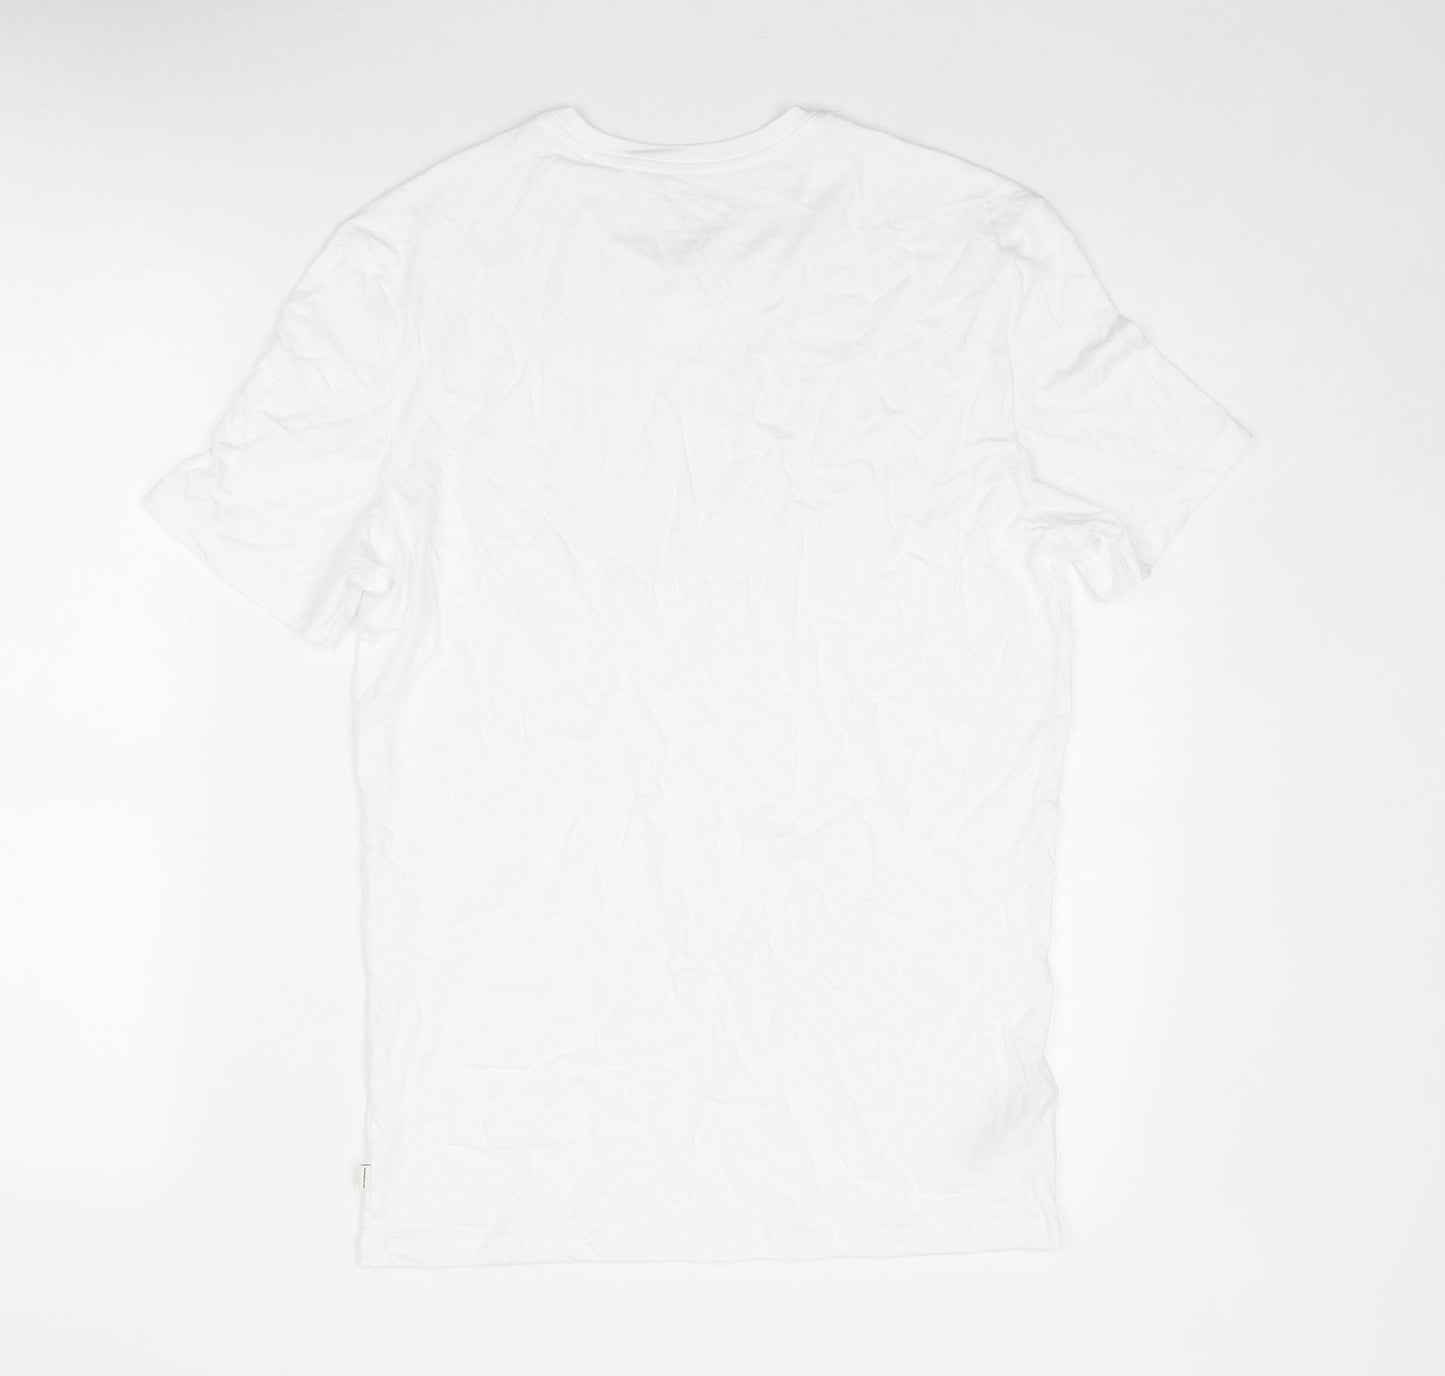 Autograph Mens White Cotton T-Shirt Size M Round Neck